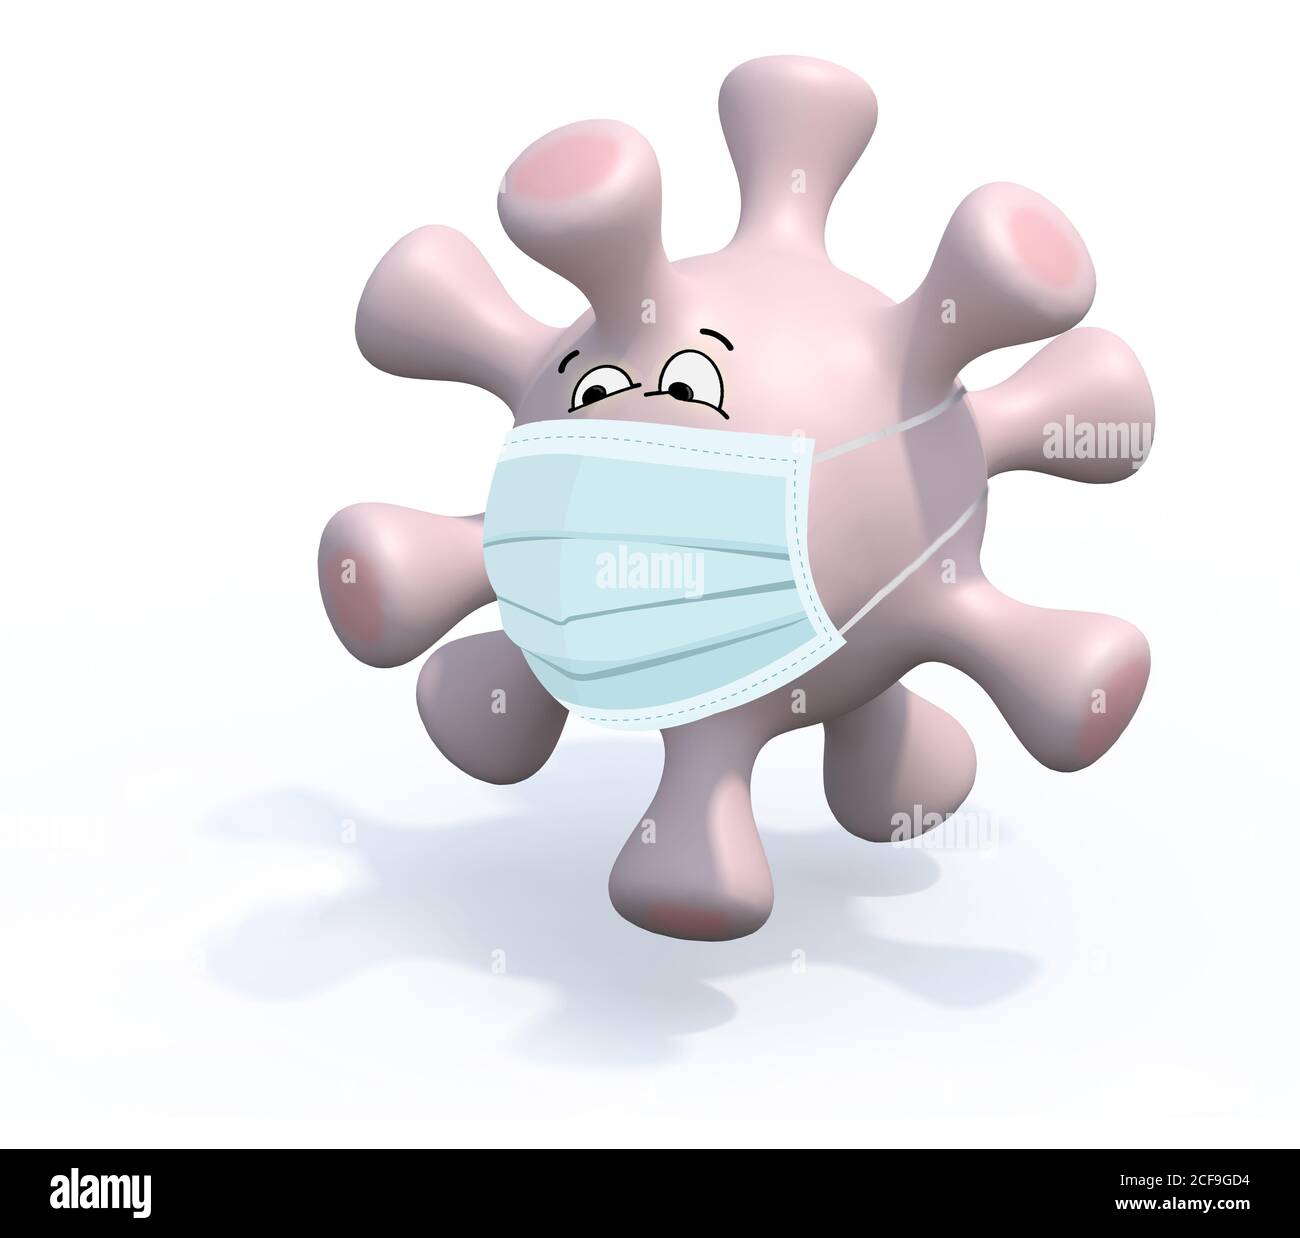 cartone animato con maschera facciale e chirurgo, illustrazione 3d Foto Stock